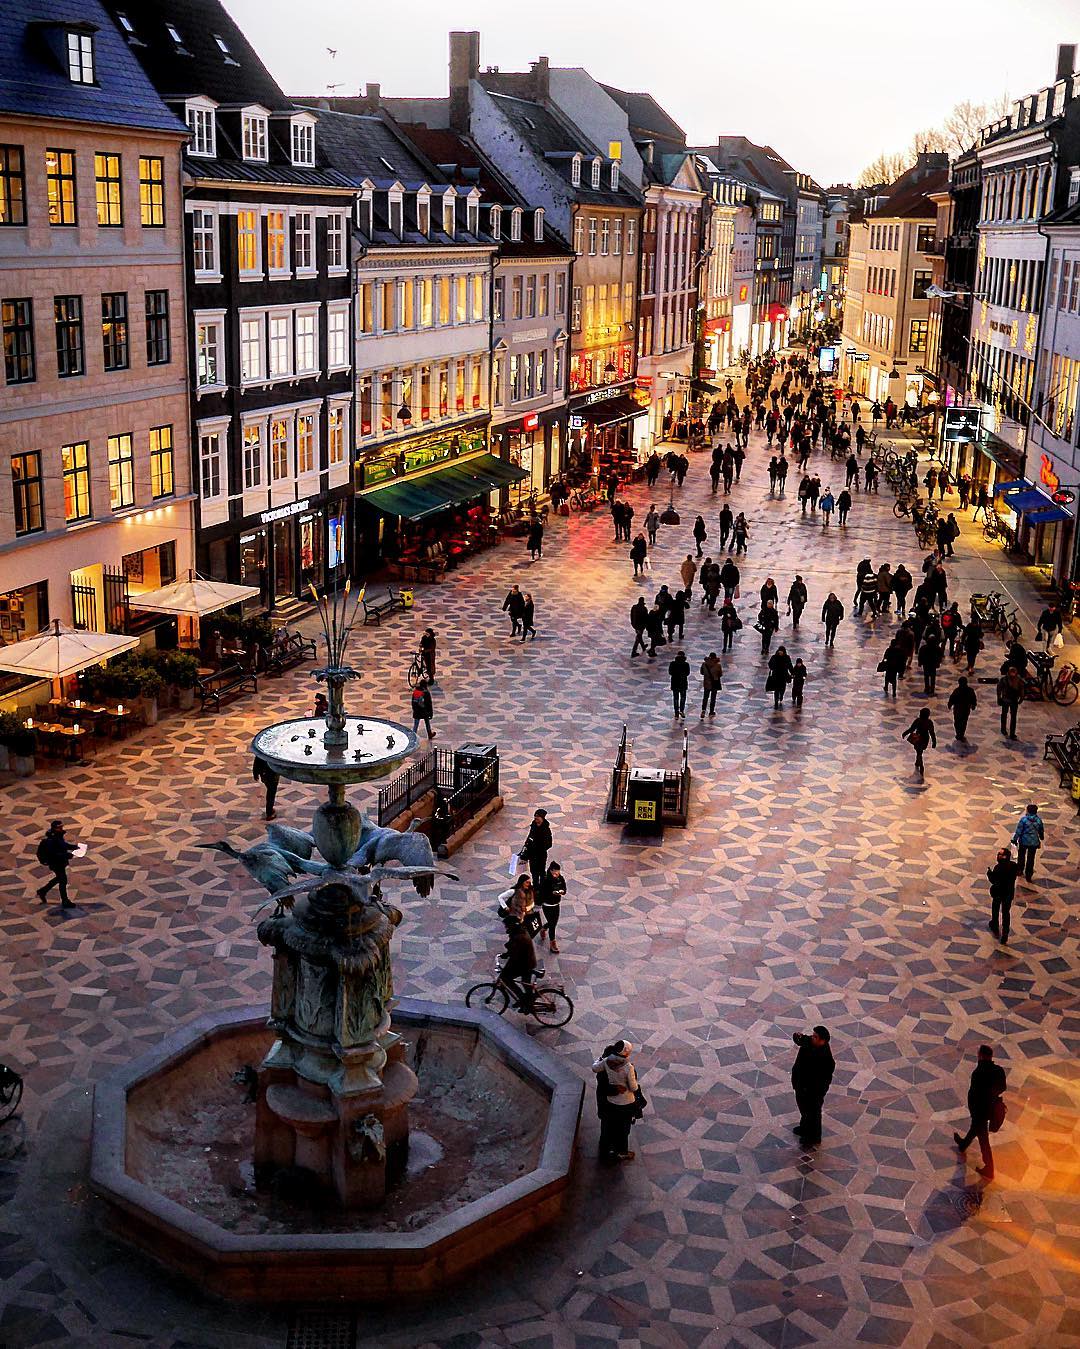 VisitDenmark on "Strøget, Copenhagen's pretty pedestrian #shopping by https://t.co/kprUomxNNM #visitdenmark #strøget #denmark #street https://t.co/rZOyOdZ6Om" / Twitter